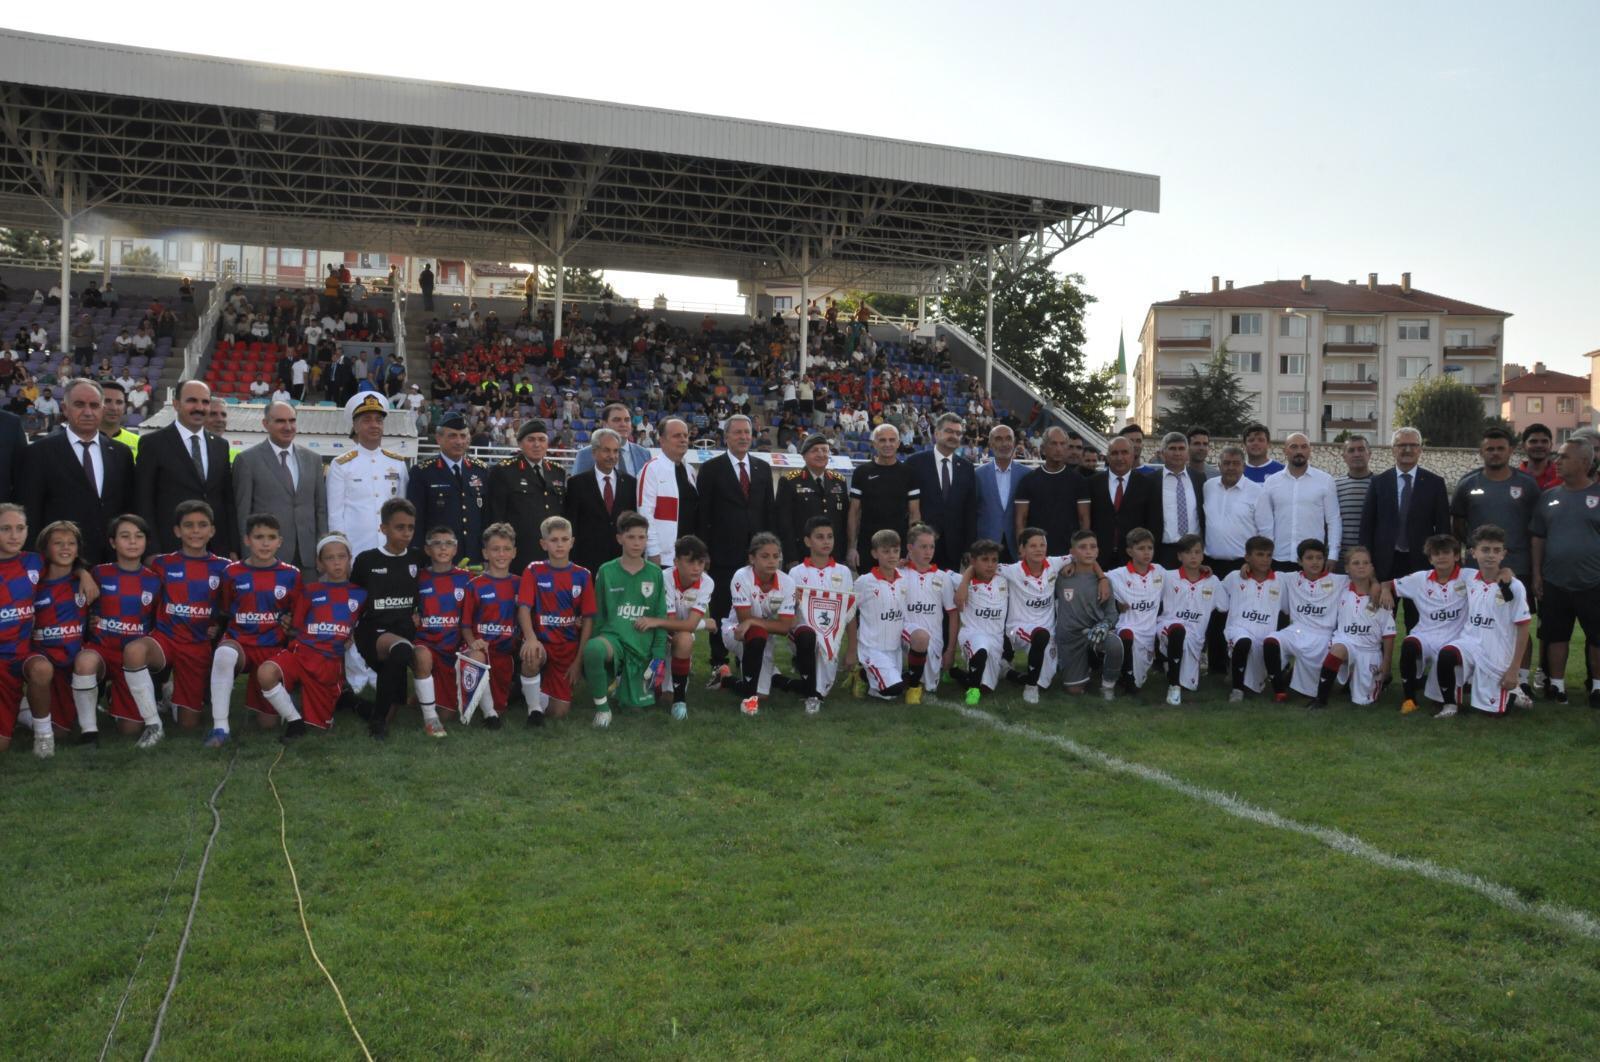 100 yılın maçını Akşehirli hocalar organize etti